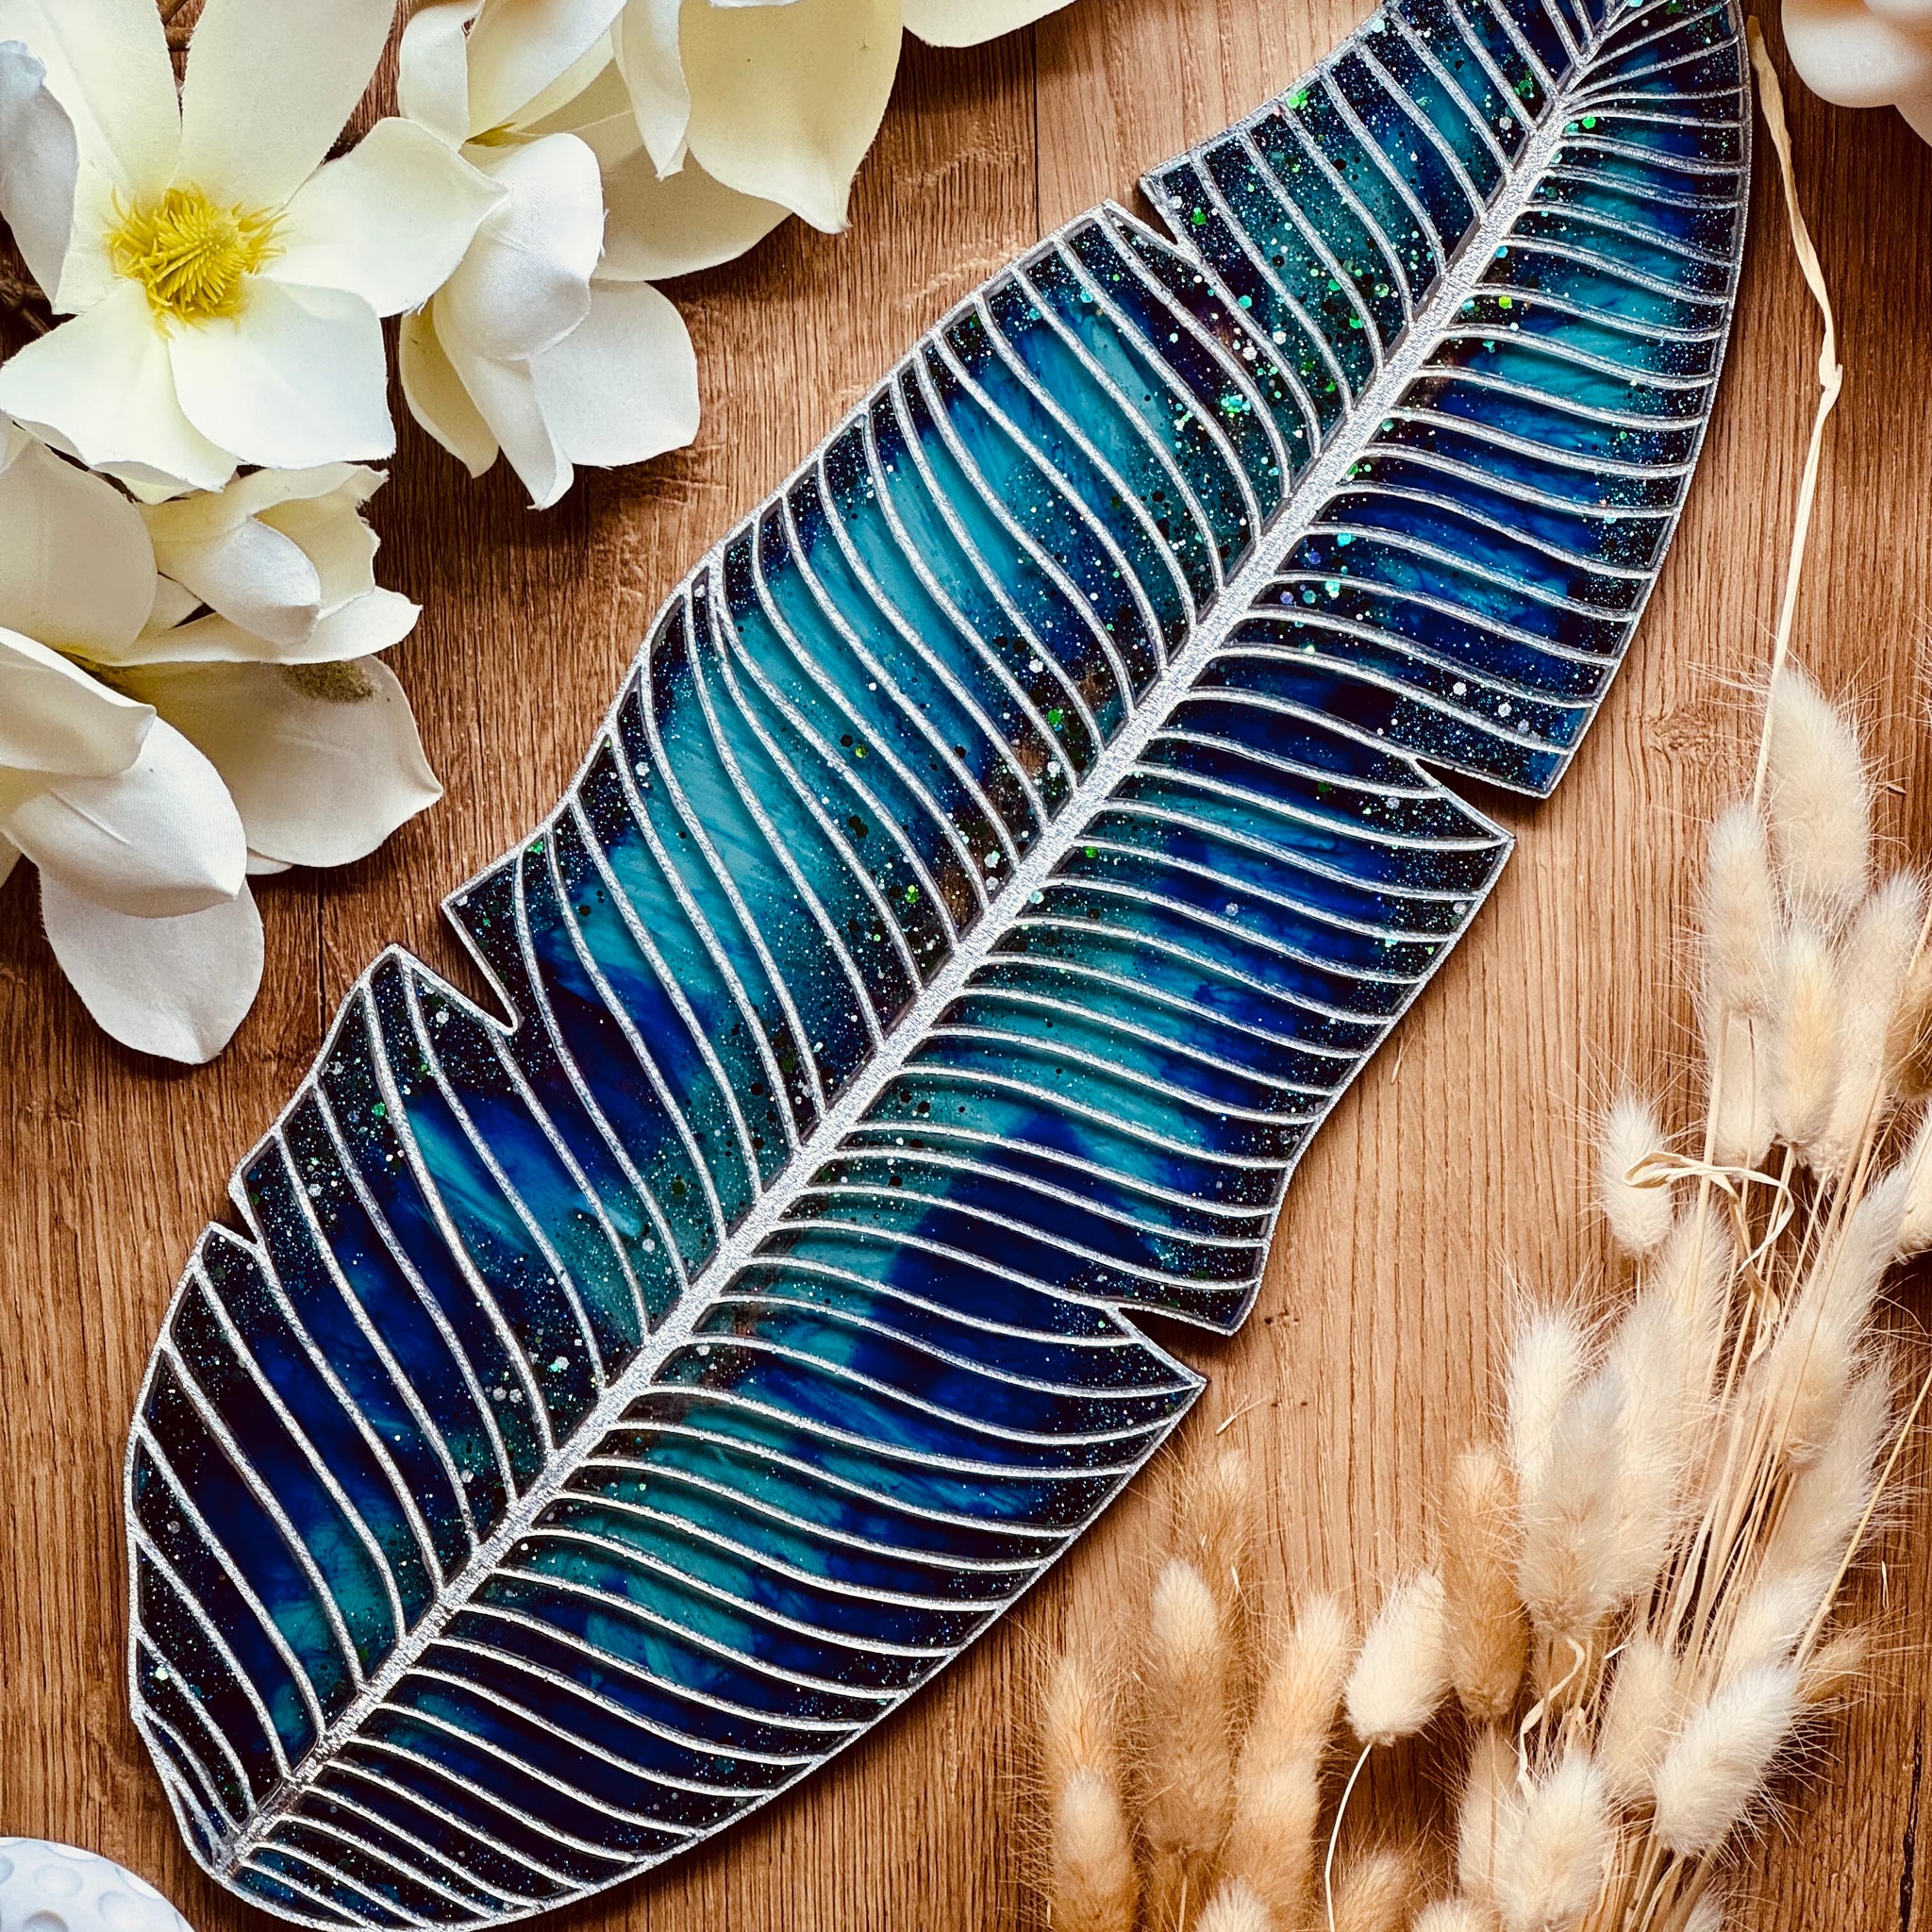 Tablett aus Resin in türkis mit silbernen Details im Leaf Design